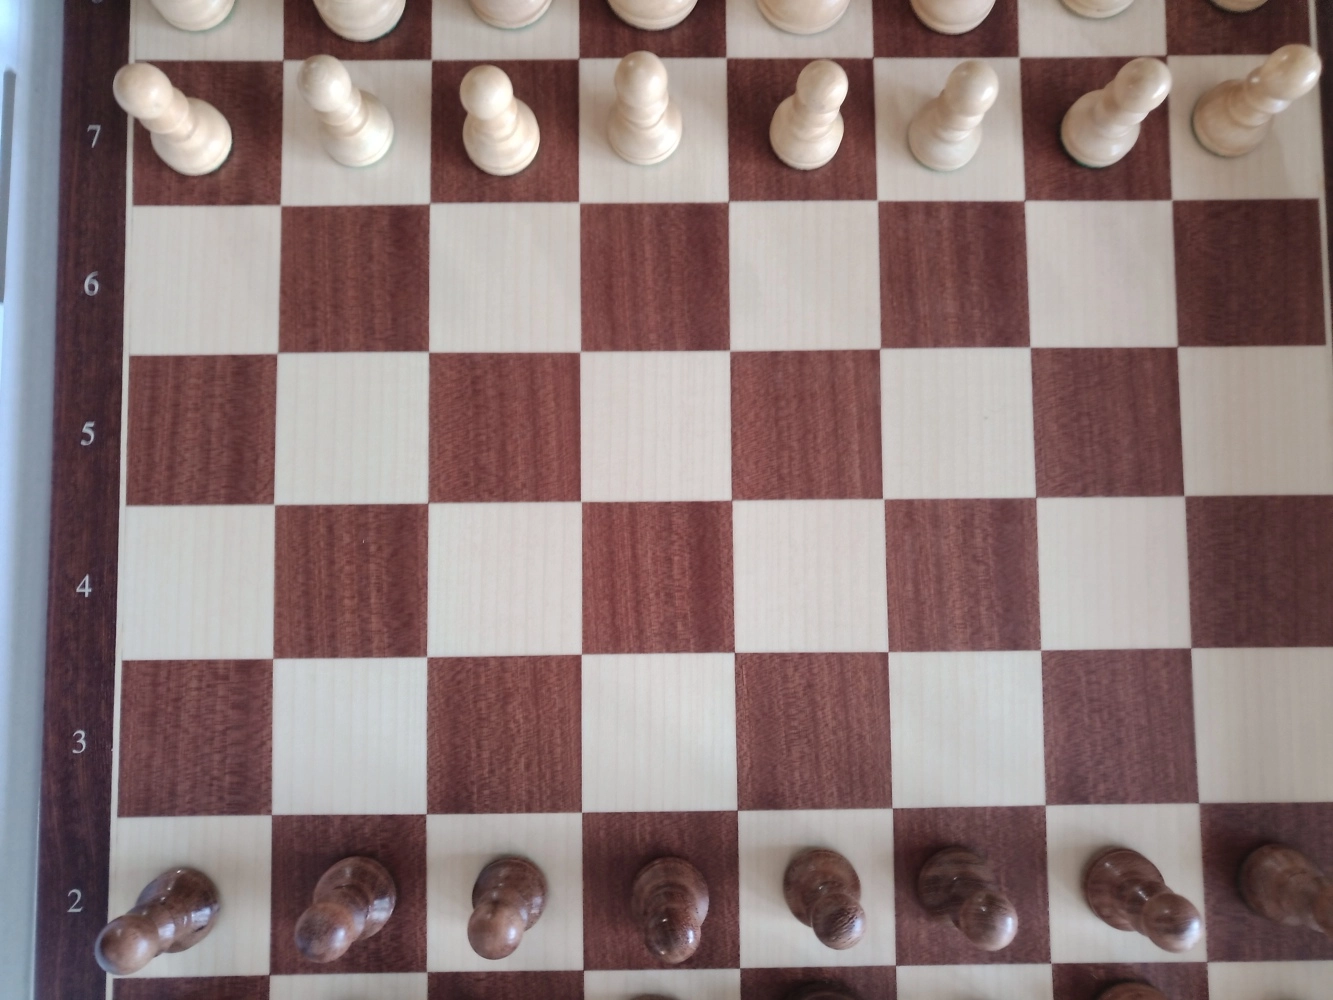 Schachspiel Advanced Mahagoni - 45cm (Teilweise B-Qualität)